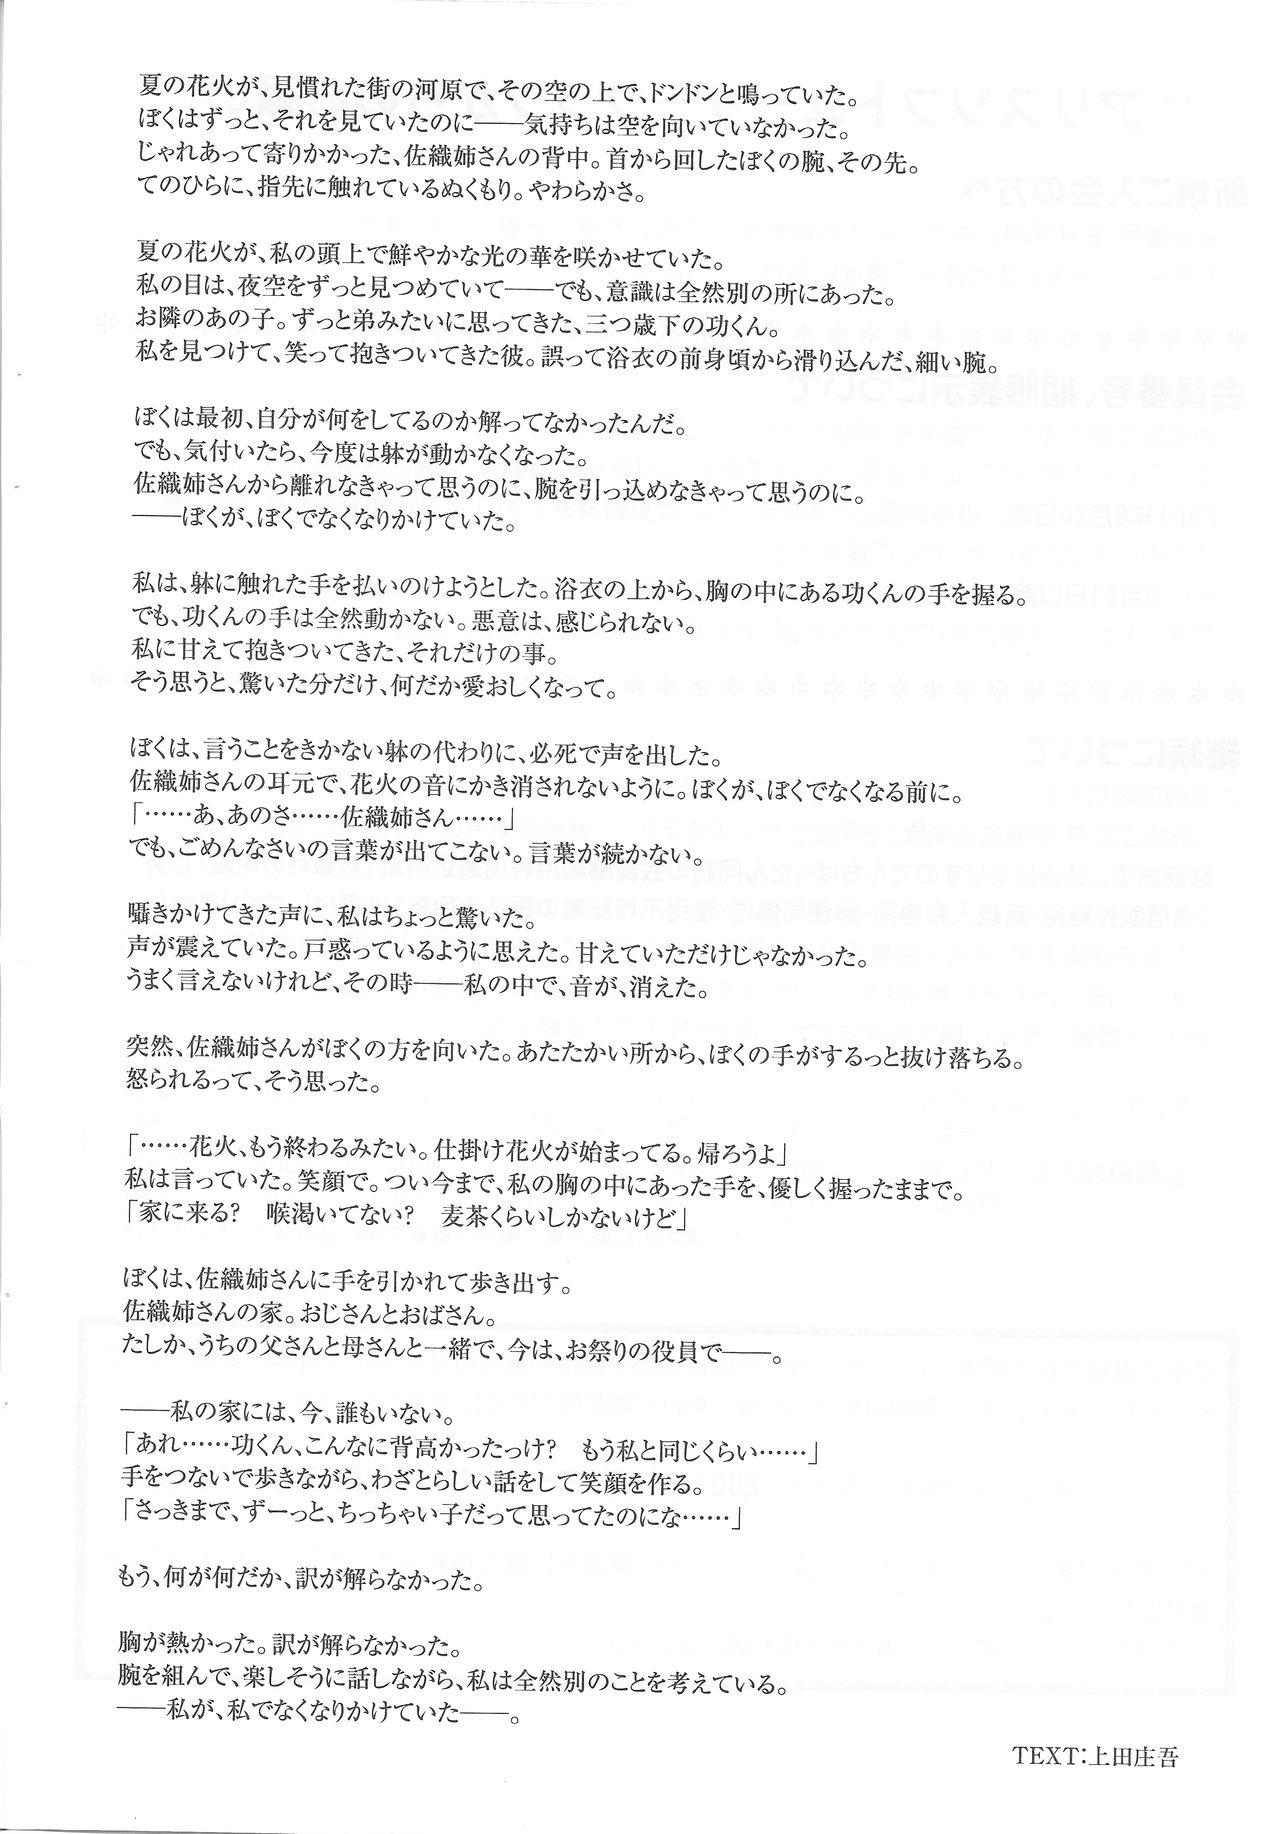 Arisu no Denchi Bakudan Vol. 19 24